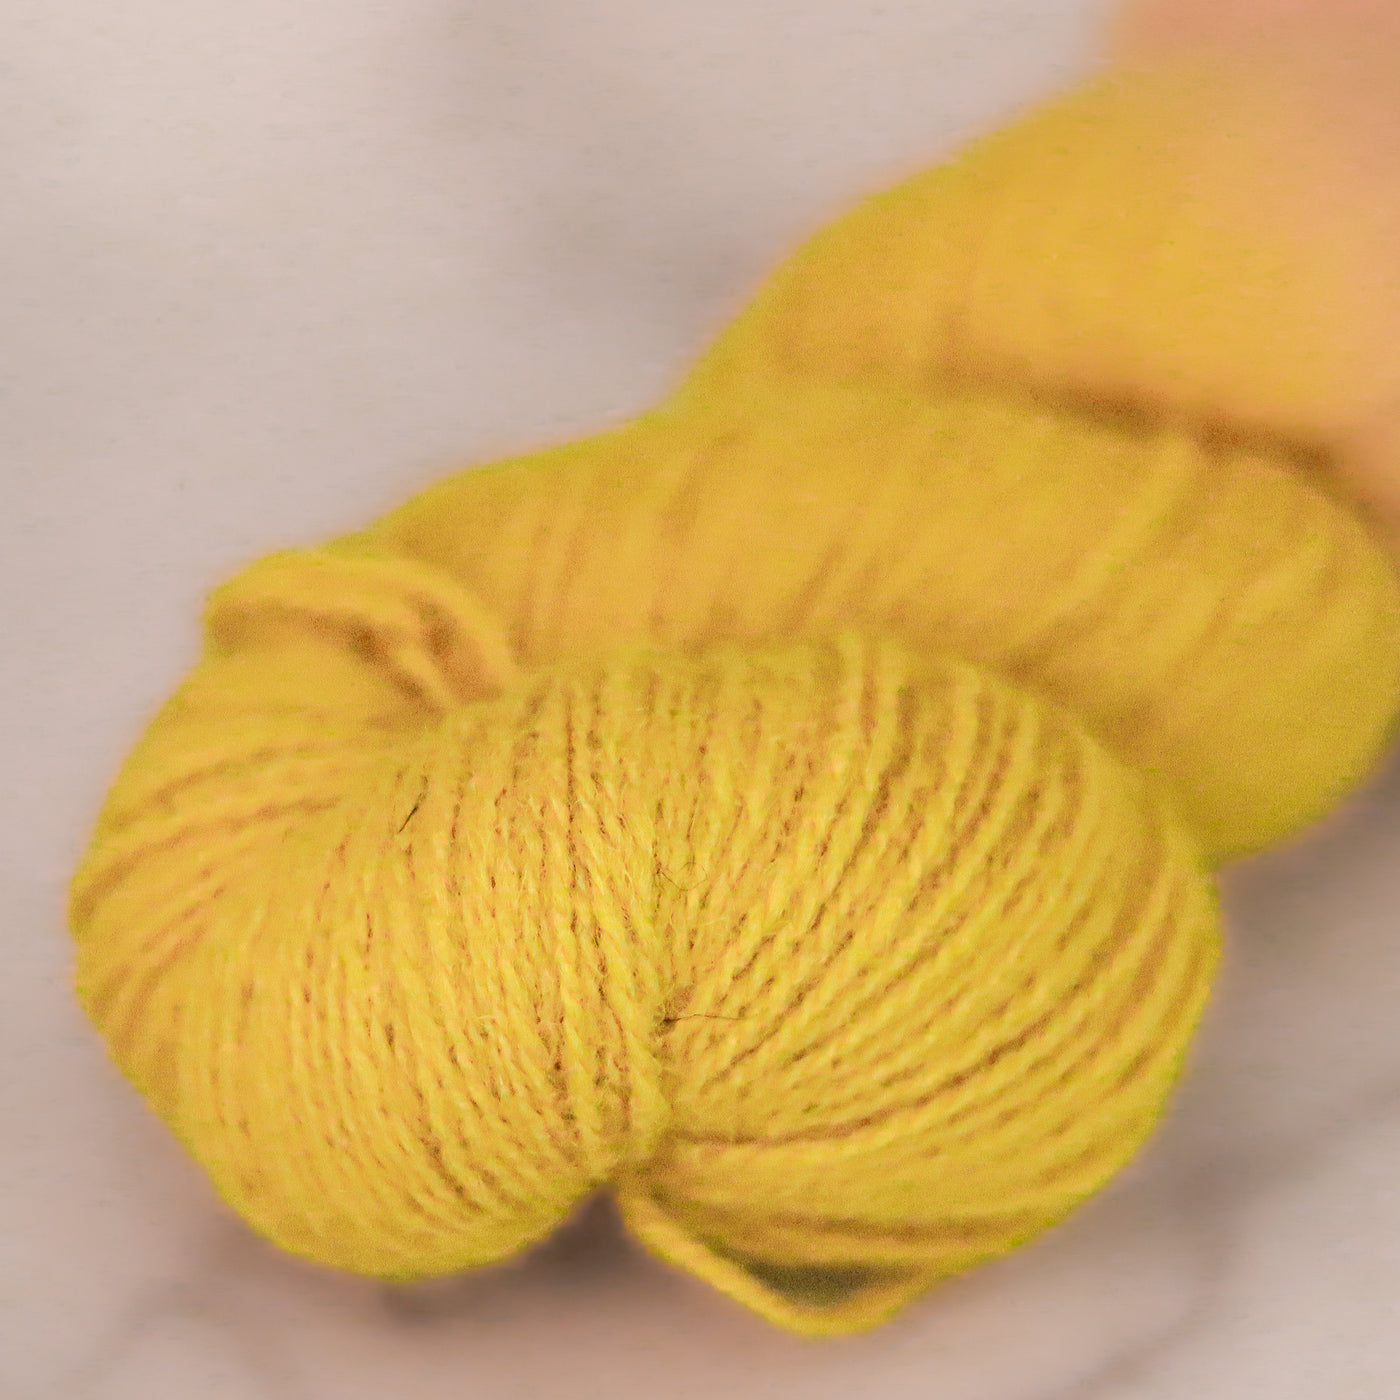 Tukuwool DK Wool Knitting Yarn